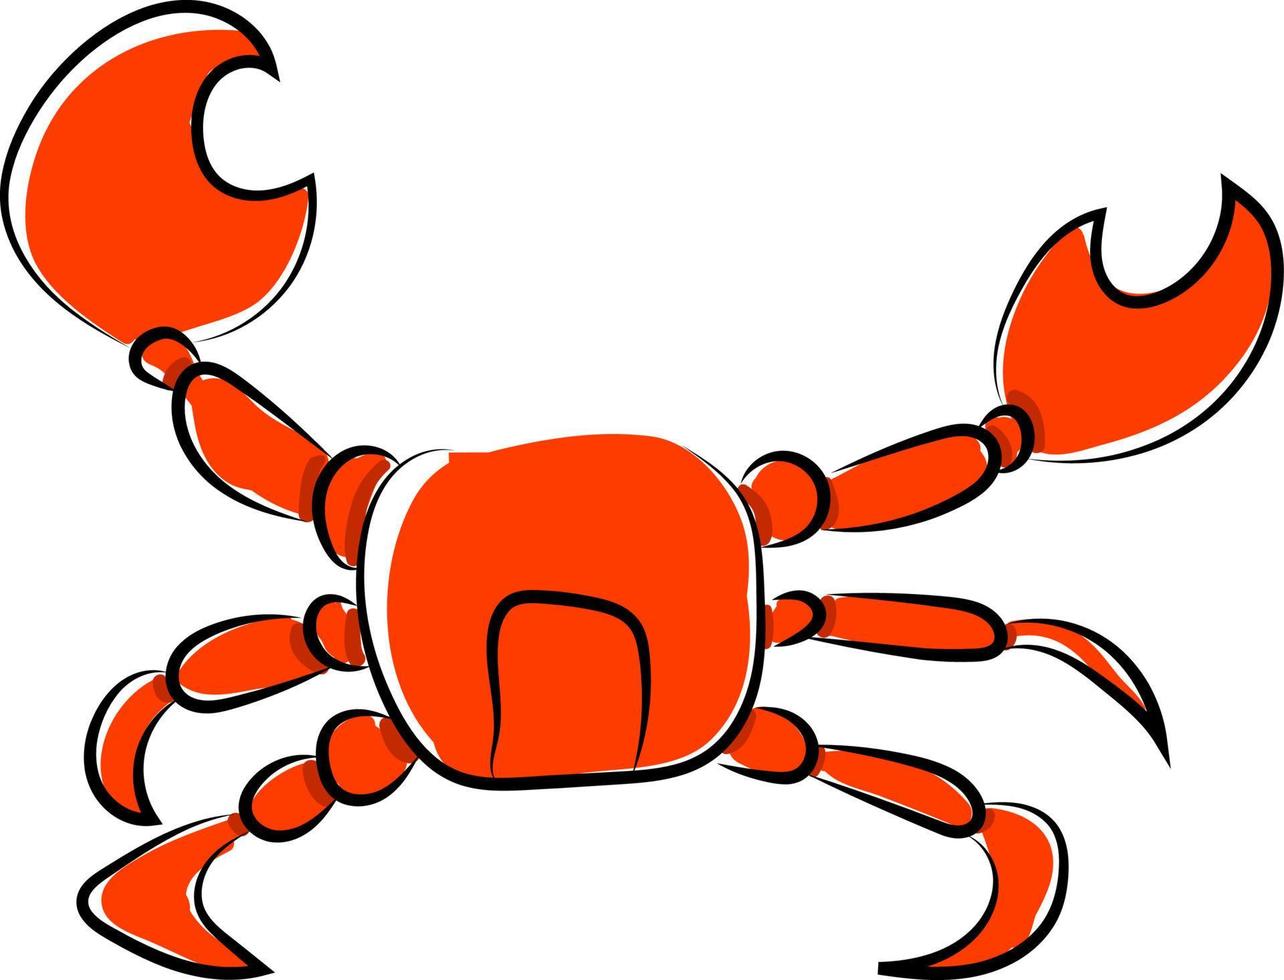 dibujo de cangrejo, ilustración, vector sobre fondo blanco.